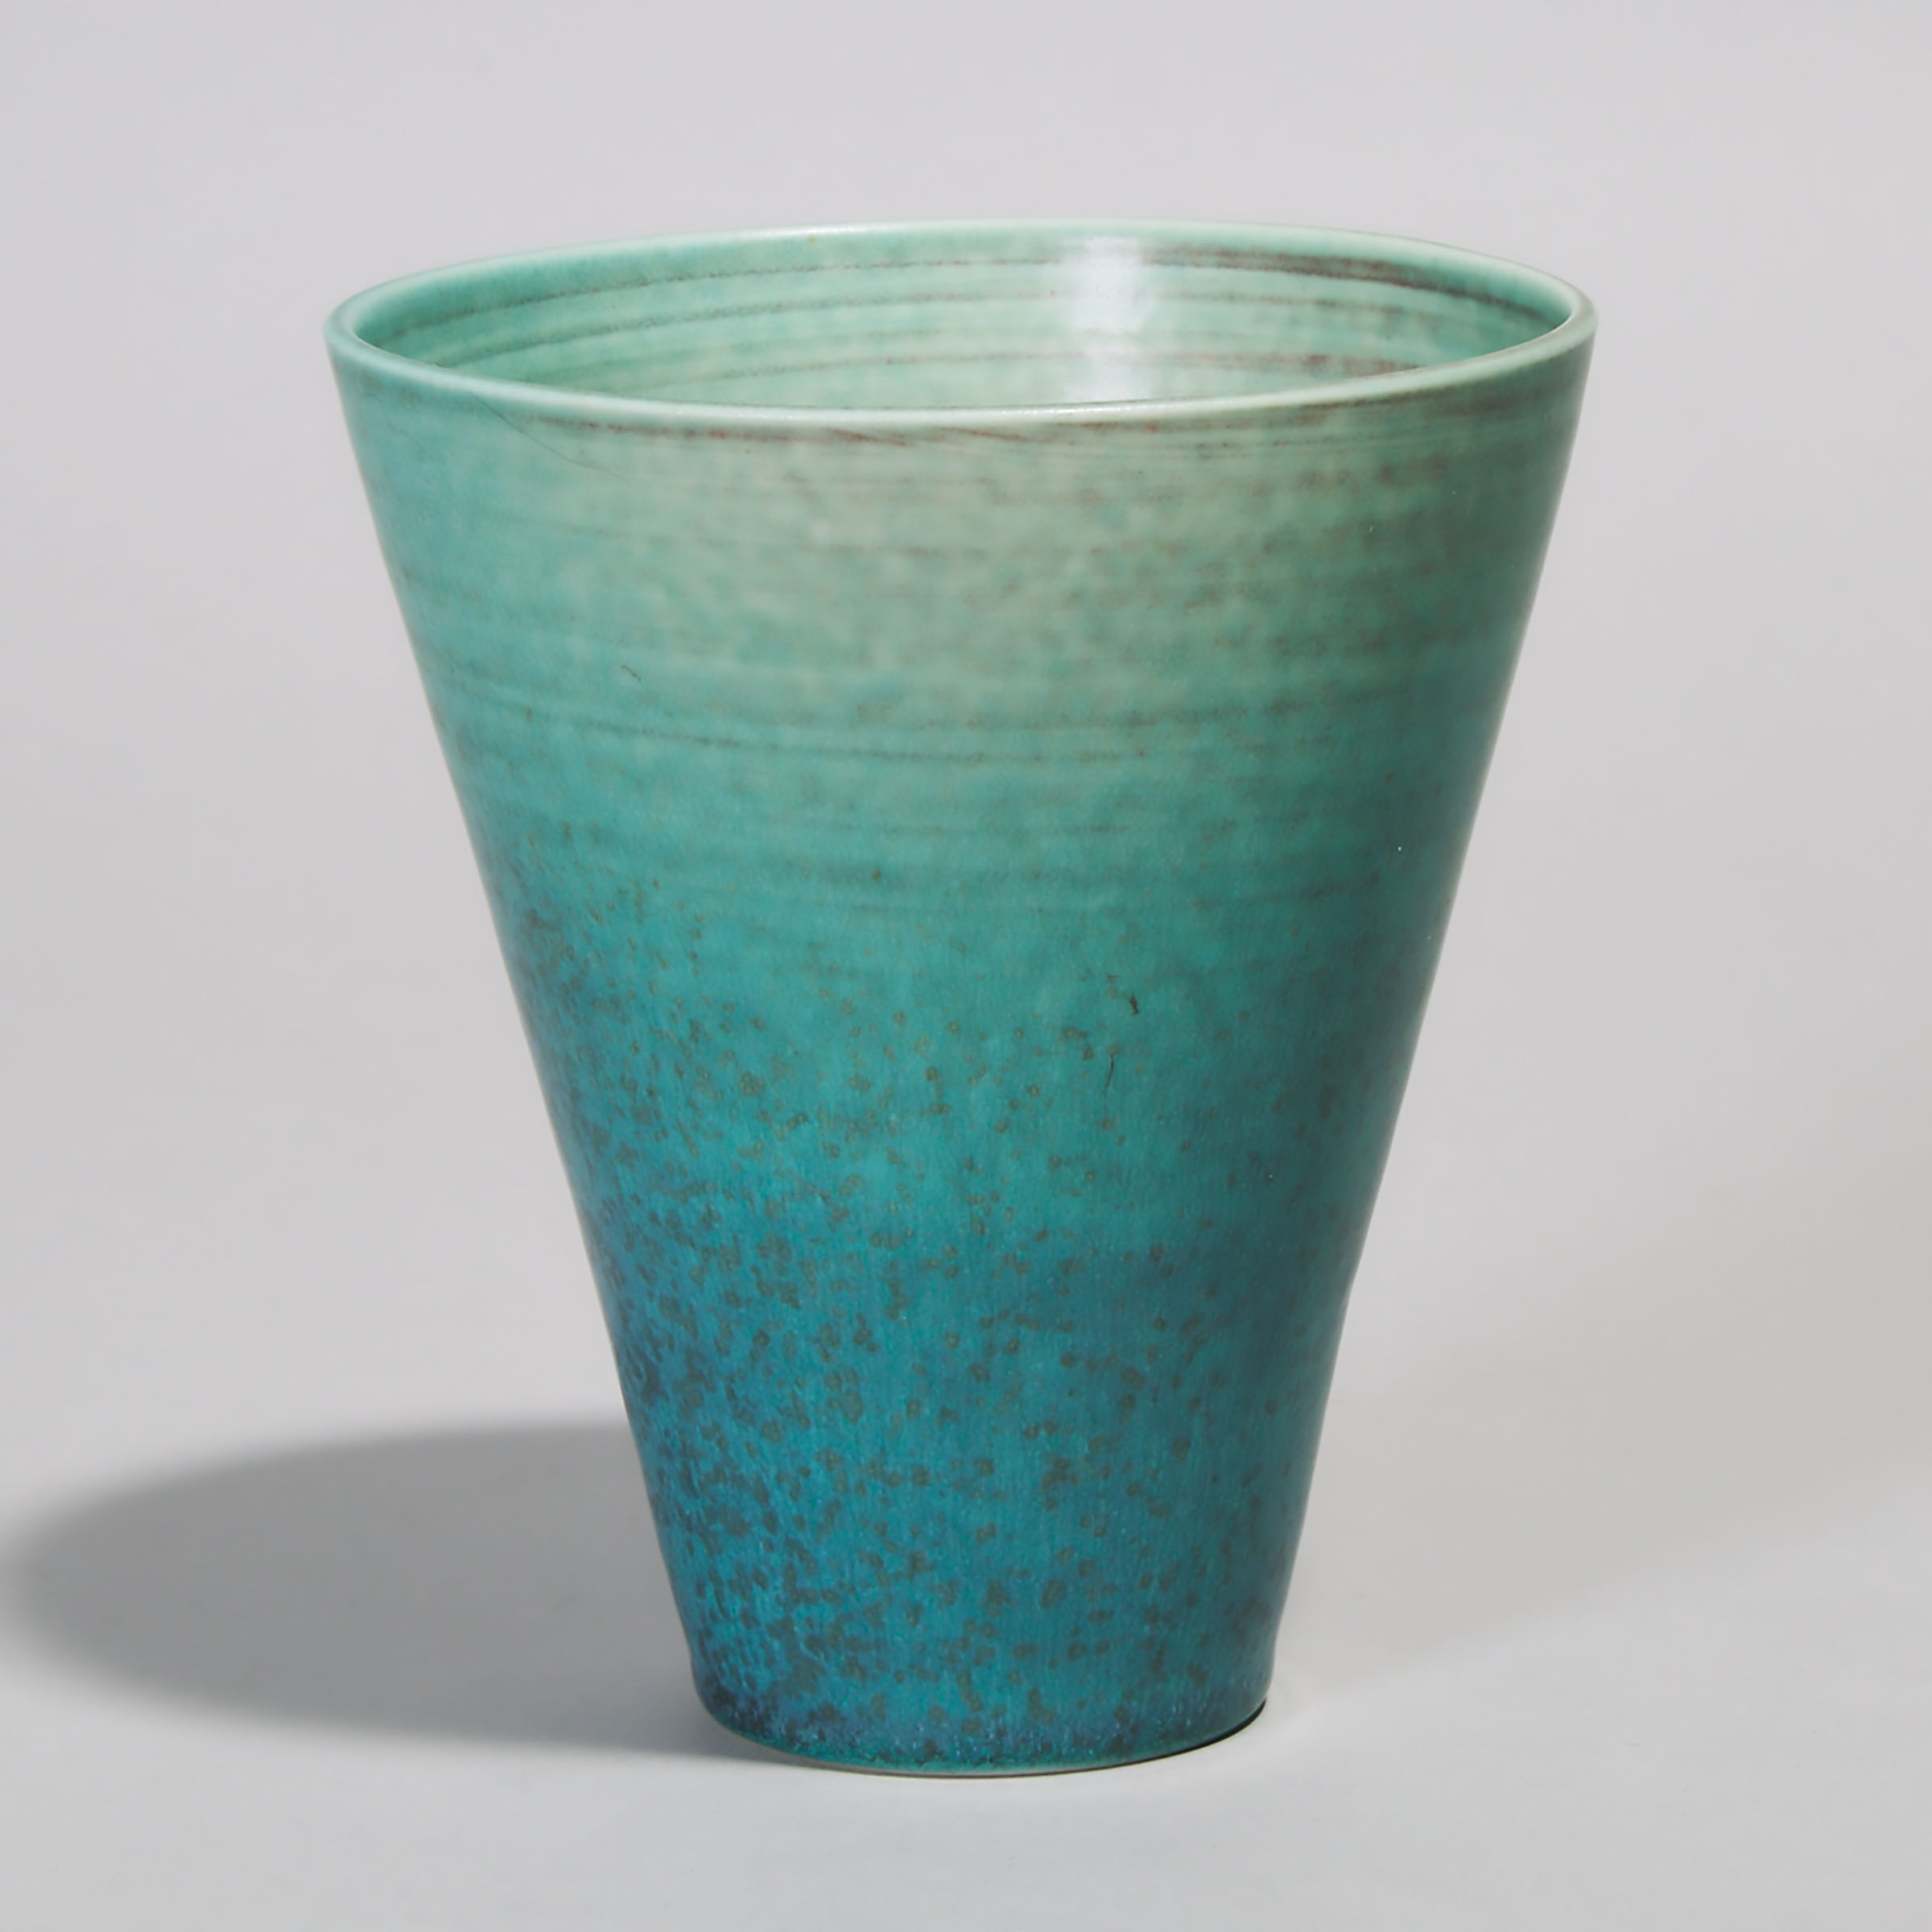 Deichmann Mottled Green Glazed Porcelain Vase, Kjeld & Erica Deichmann, mid-20th century